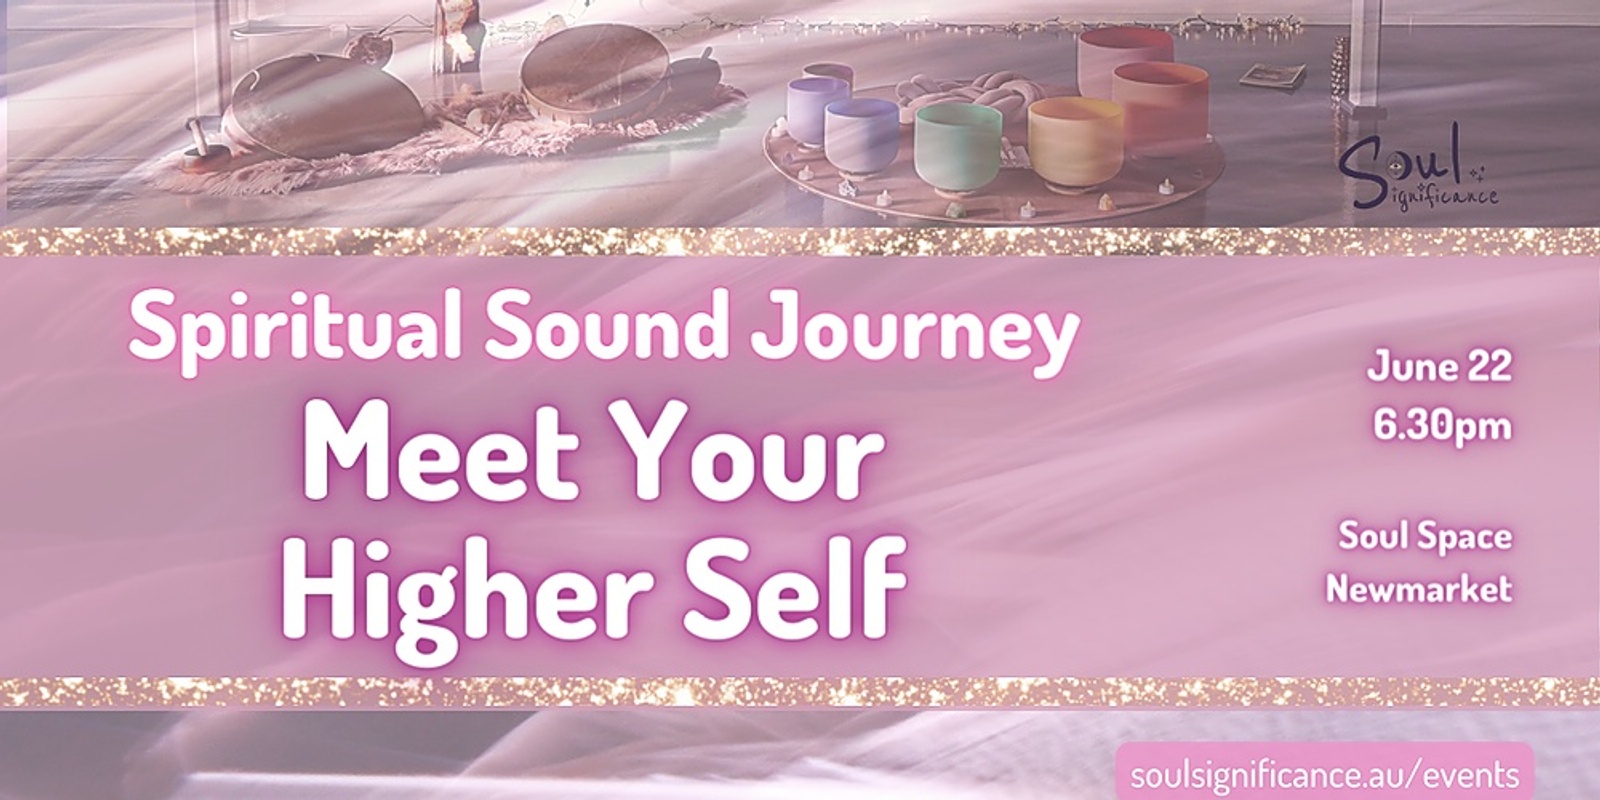 A Spiritual Sound Journey - Meet Your Higher Self